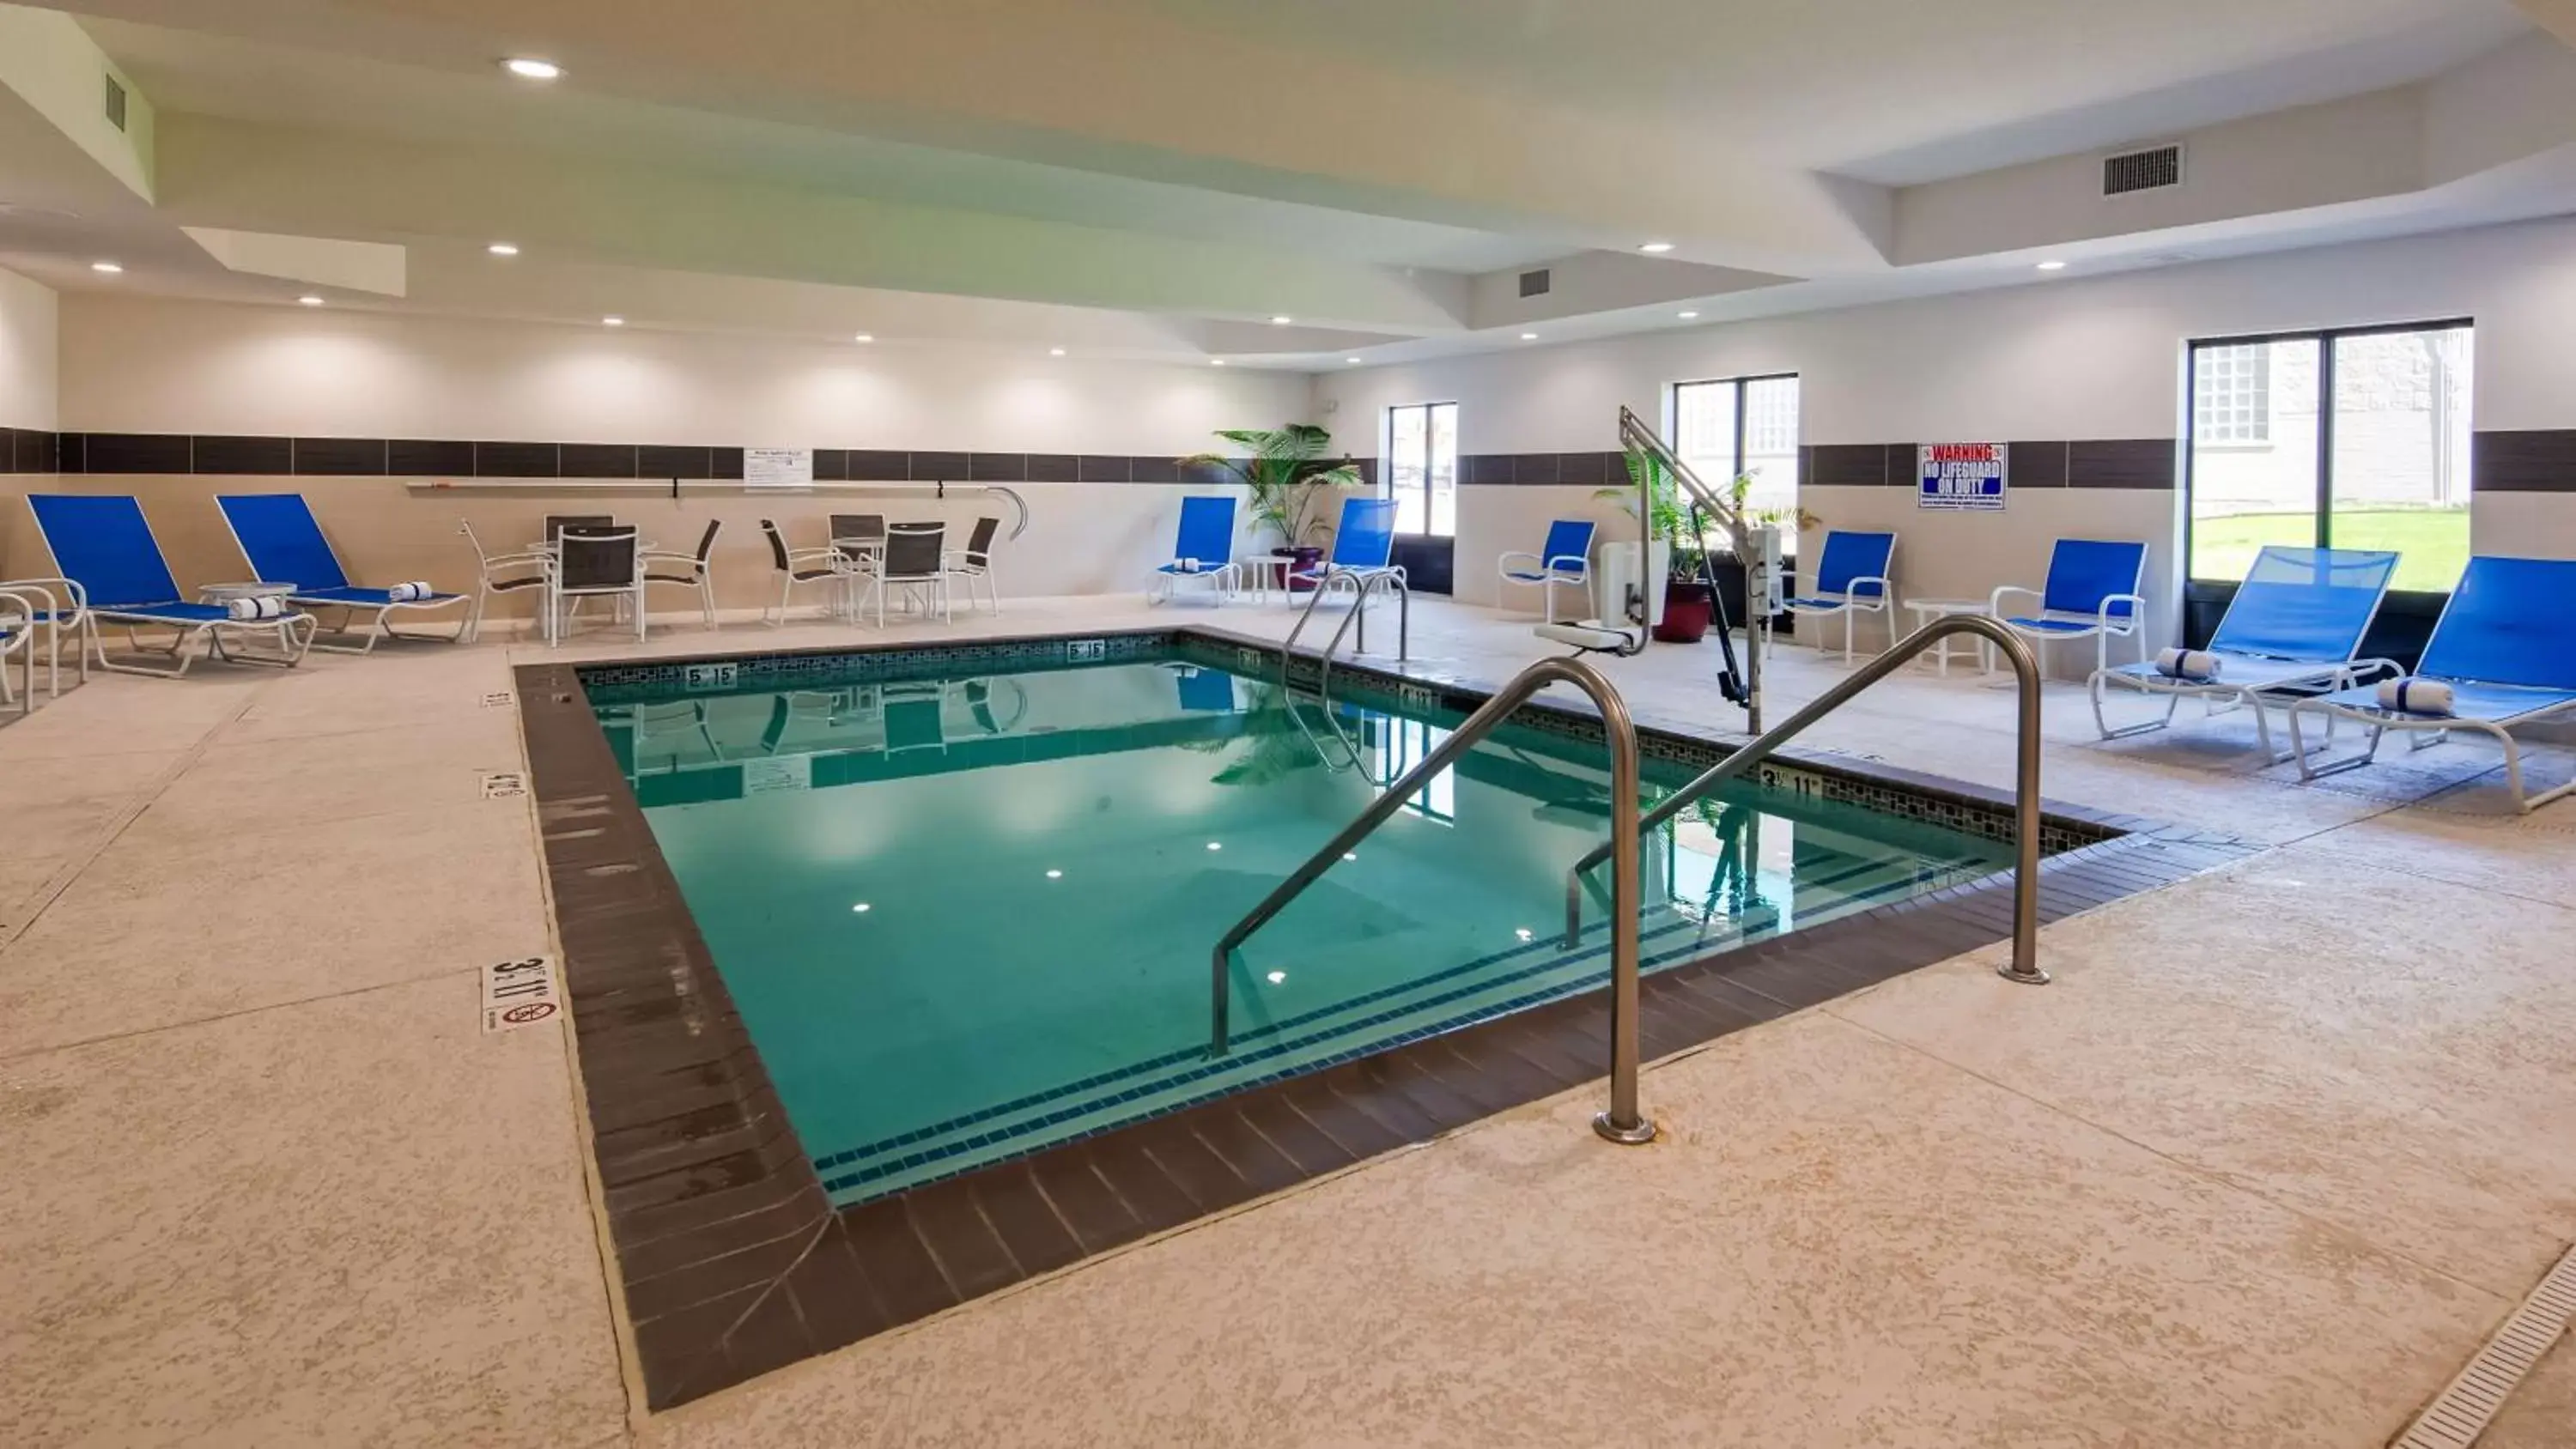 On site, Swimming Pool in Best Western Plus Ardmore Inn & Suites